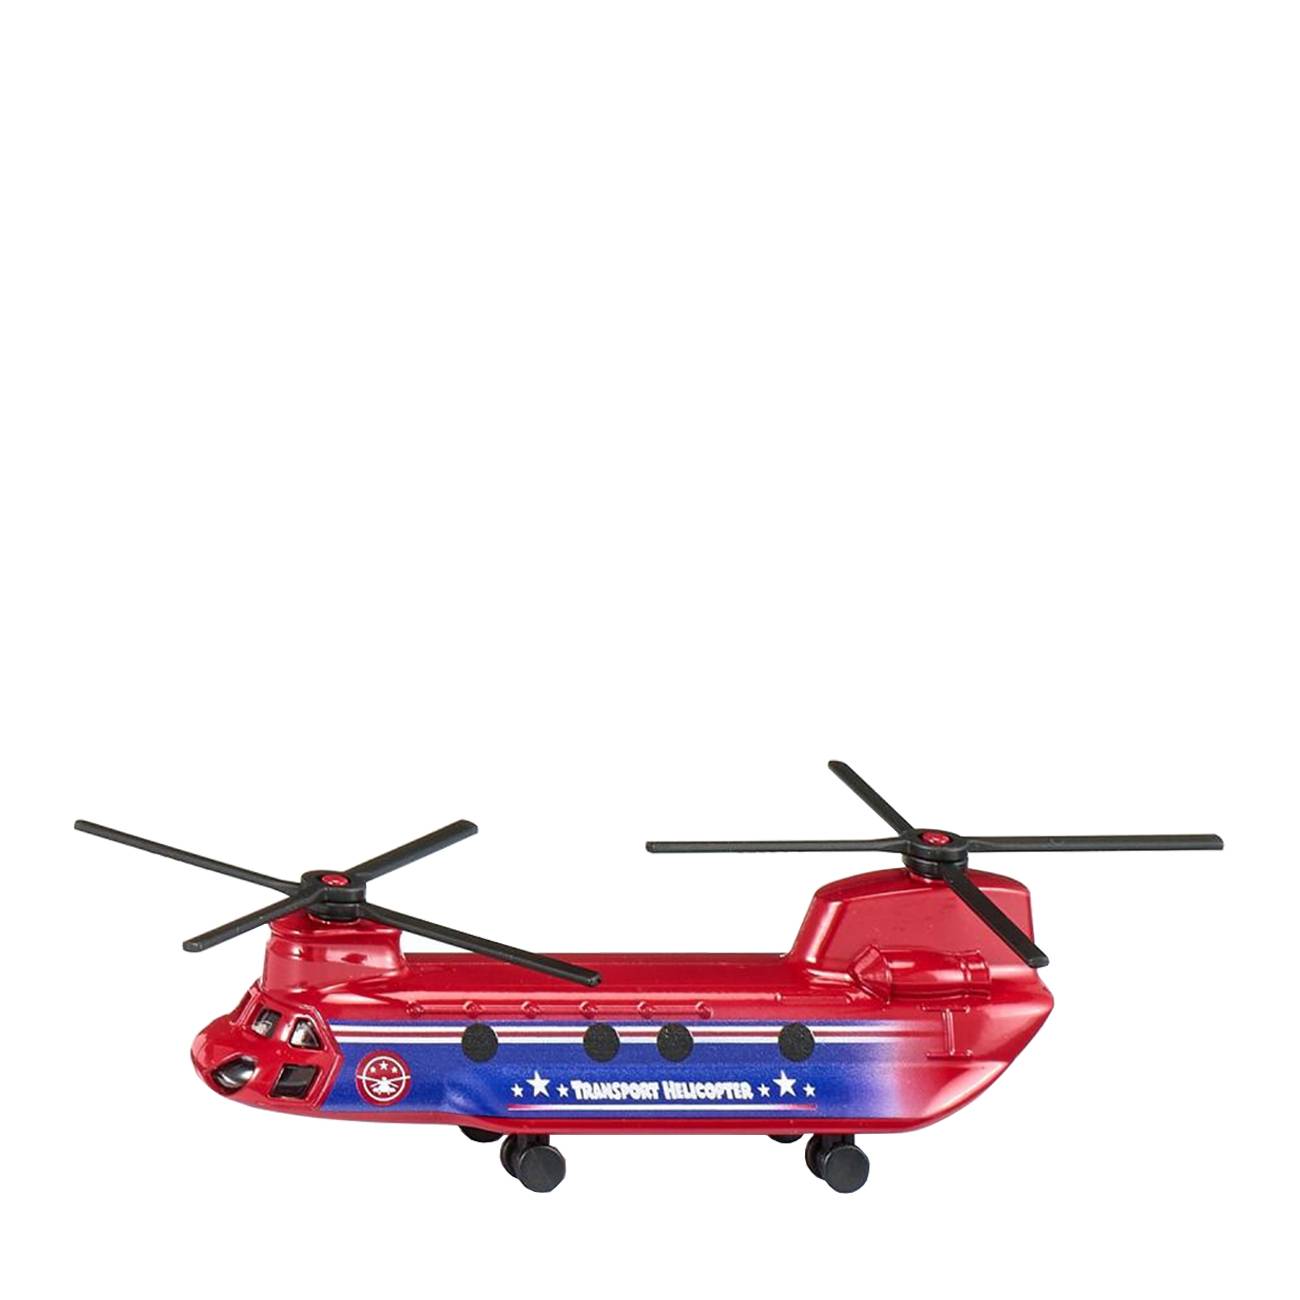 Transport helicopter 1689 bestvalue.eu